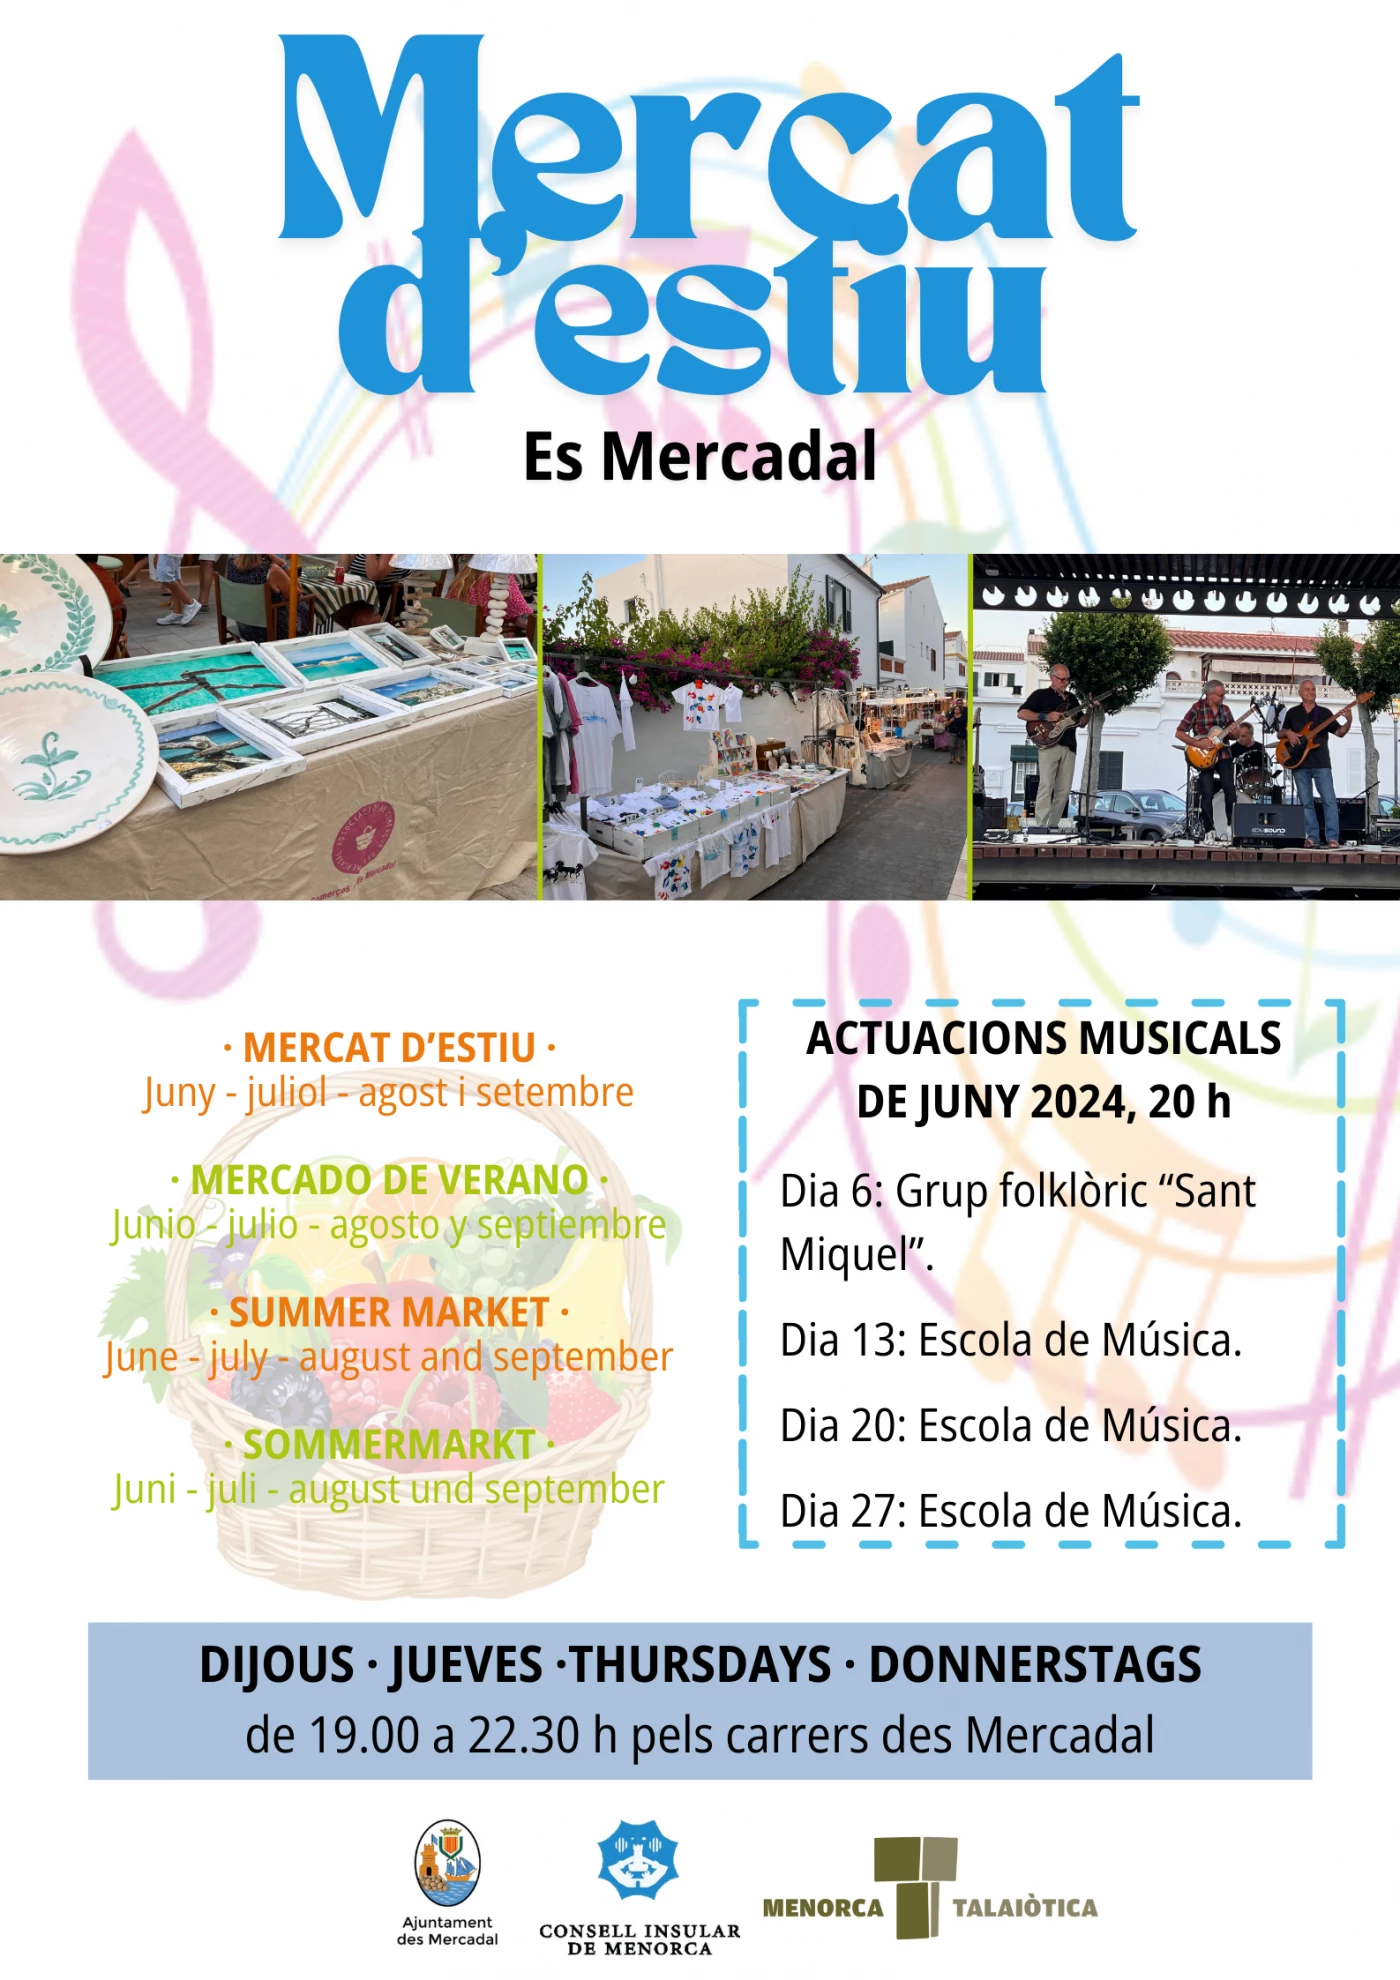 Image de l'événement Mercado de verano des Mercadal